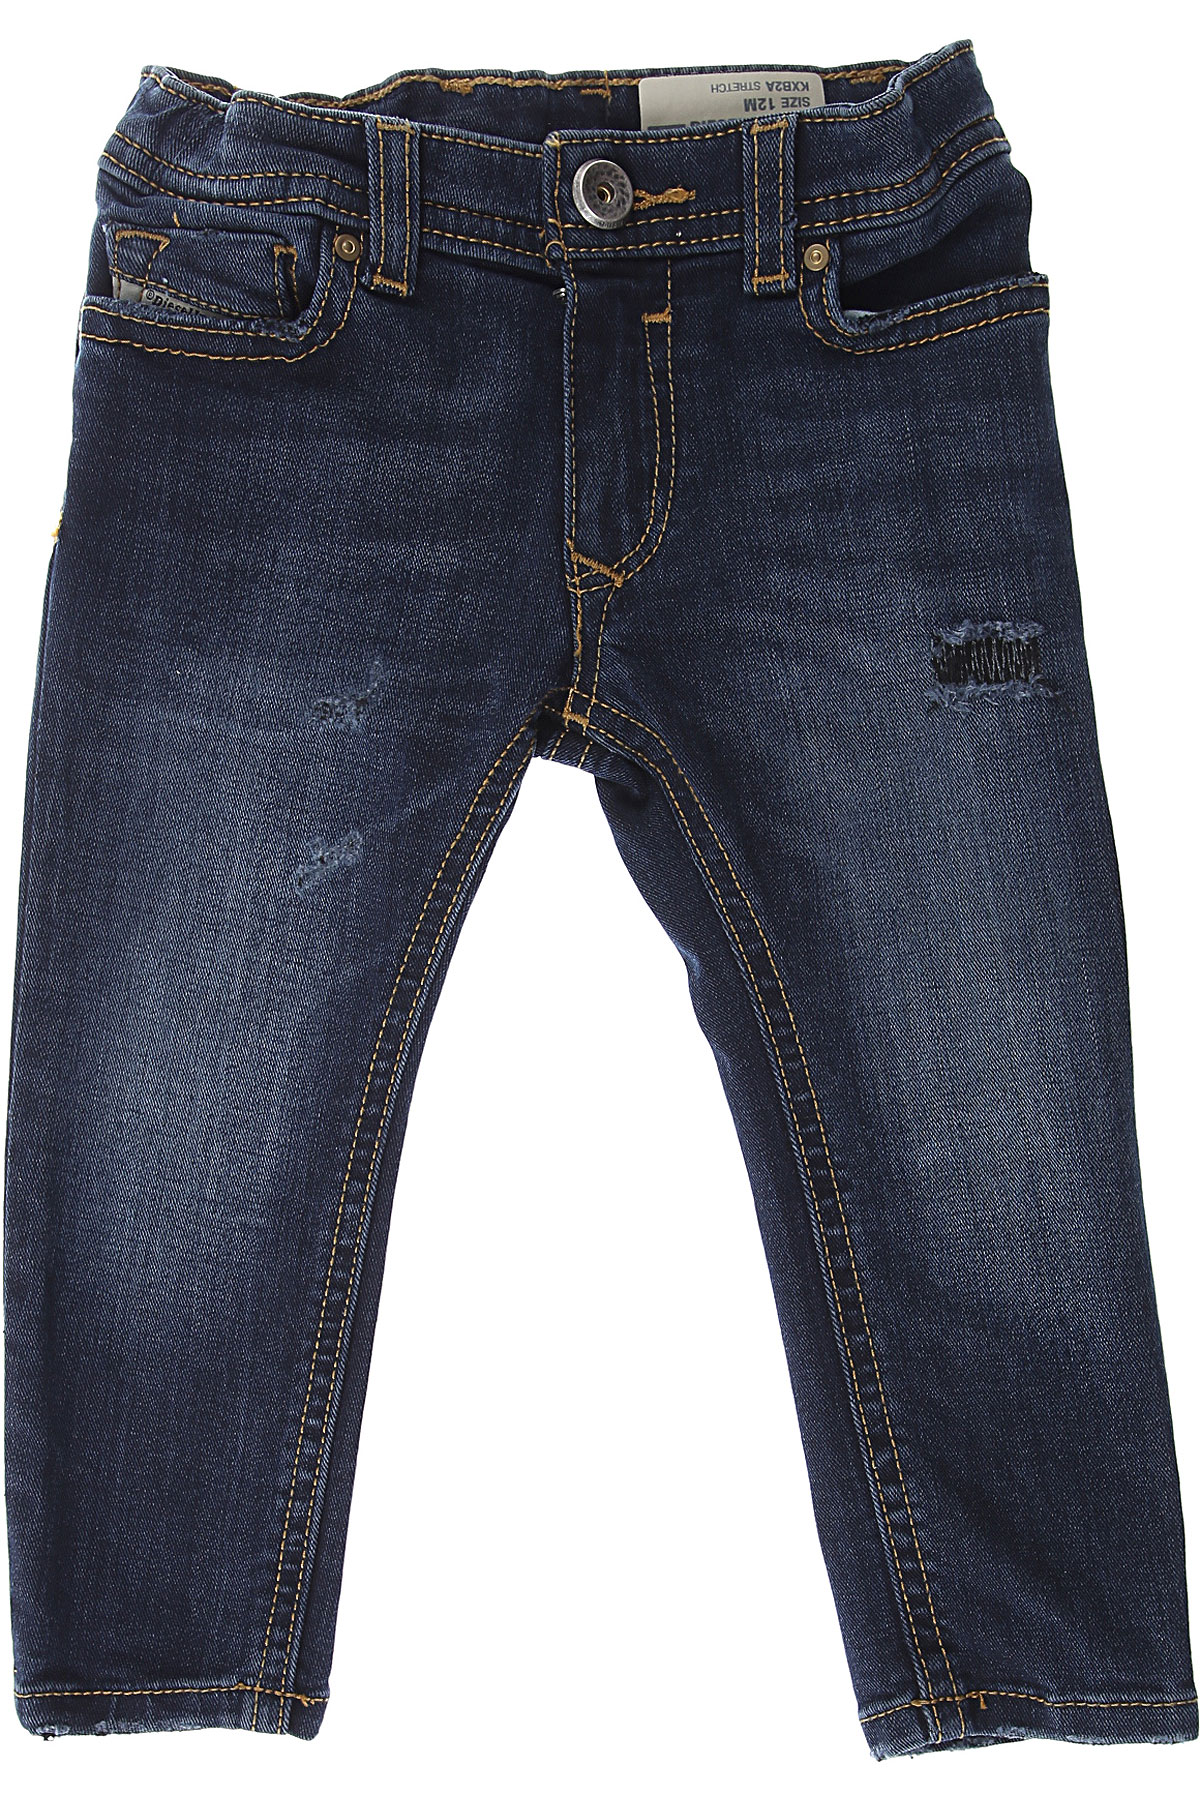 Diesel Baby Jeans für Jungen Günstig im Sale, Denim- Blau, Baumwolle, 2017, 12 M 18 M 6M 9 M